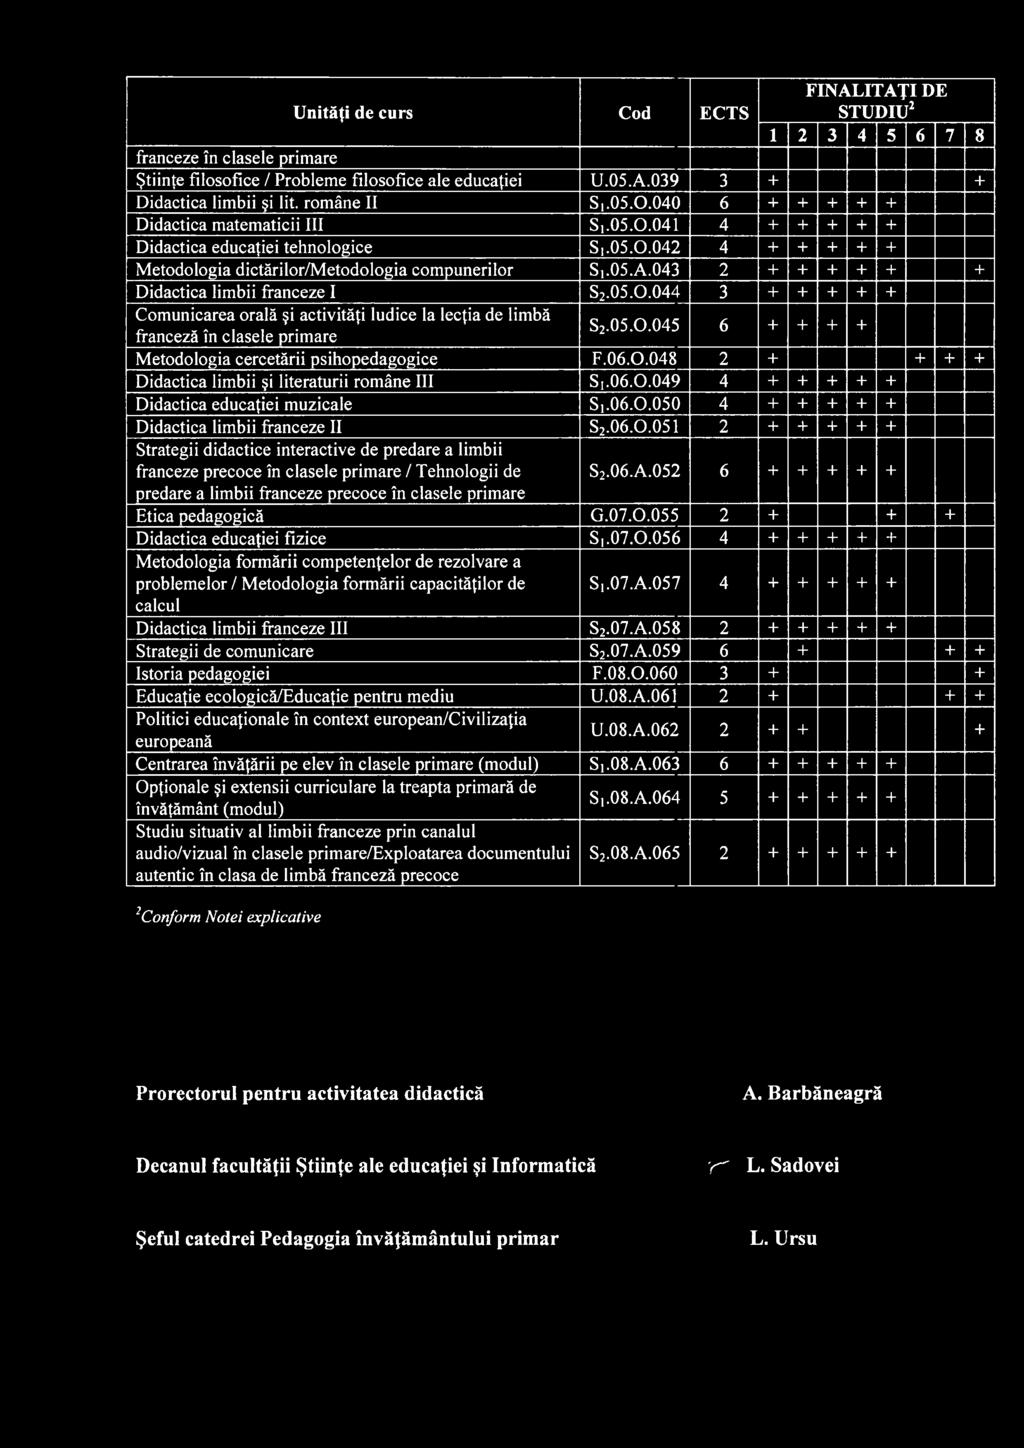 05.0.0 6 + + + + franceză în clasele primare Metodologia cercetării psihopedagogice F.06.0.048 2 + + + + Didactica limbii şi literaturii române III Sj.06.0.049 4 + + + + + Didactica educaţiei muzicale Si.